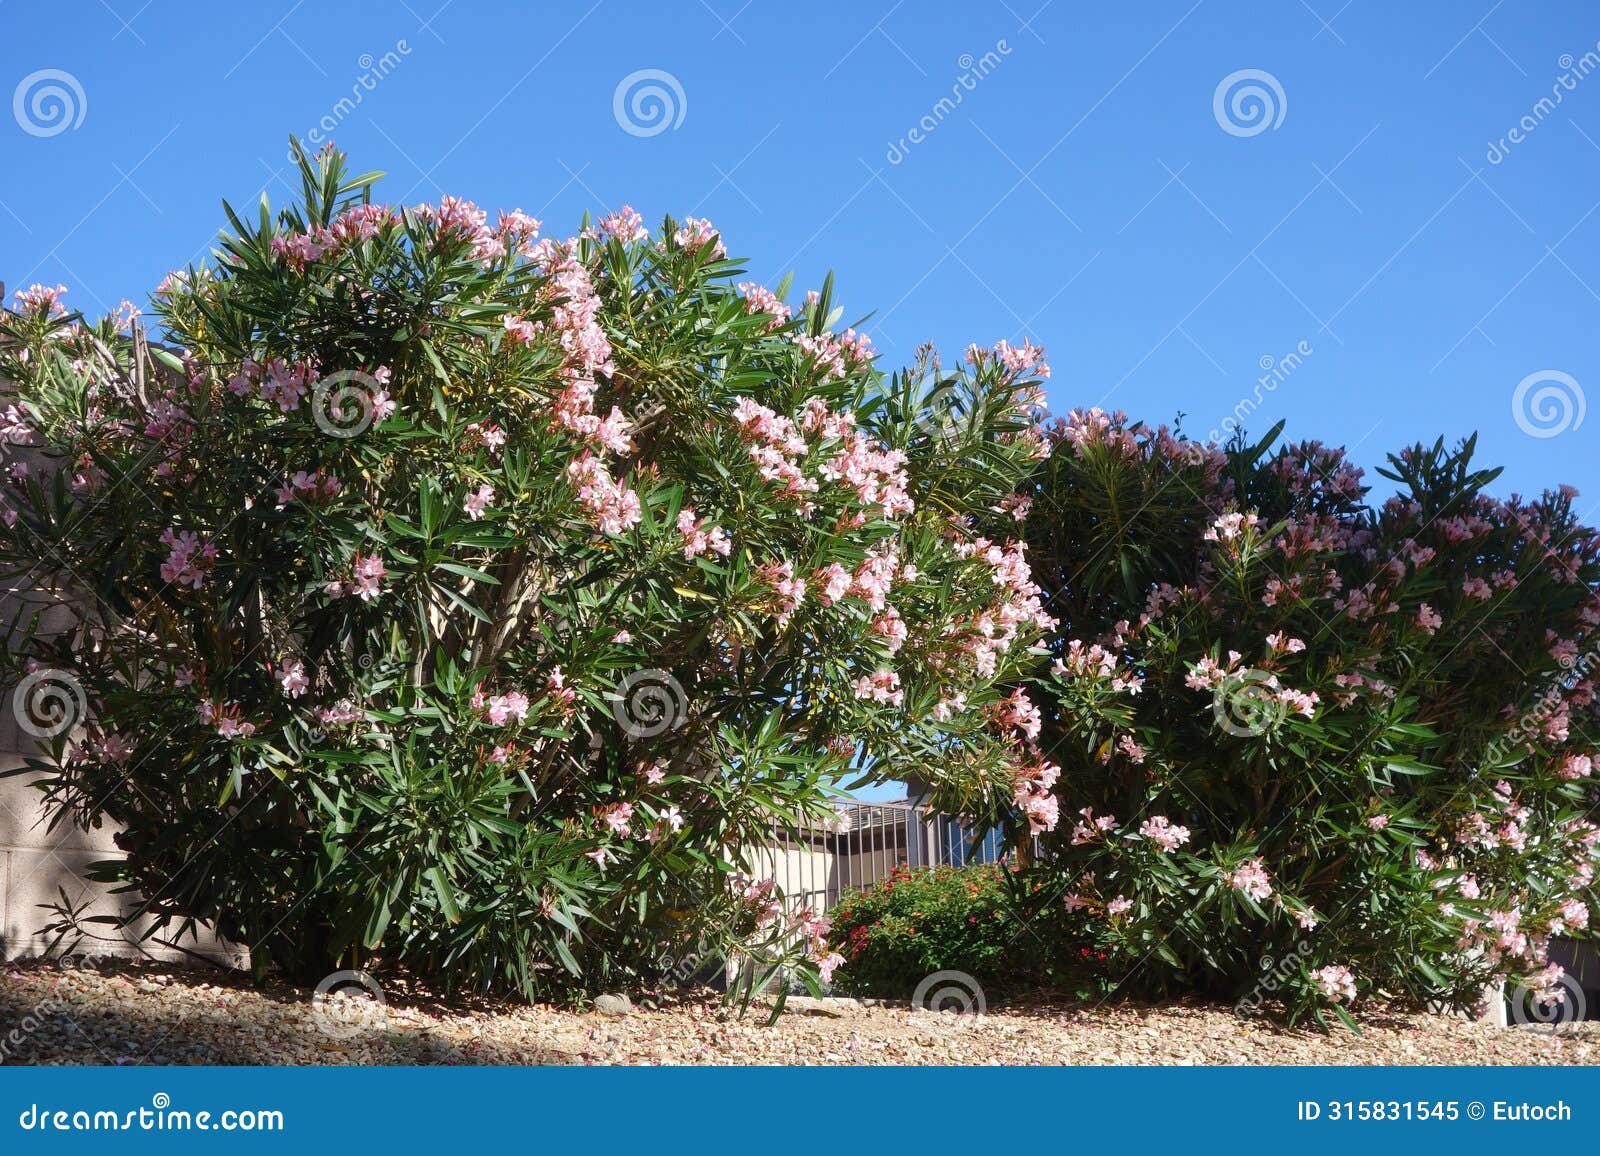 blooming pink oleander shrubs in informal hedge